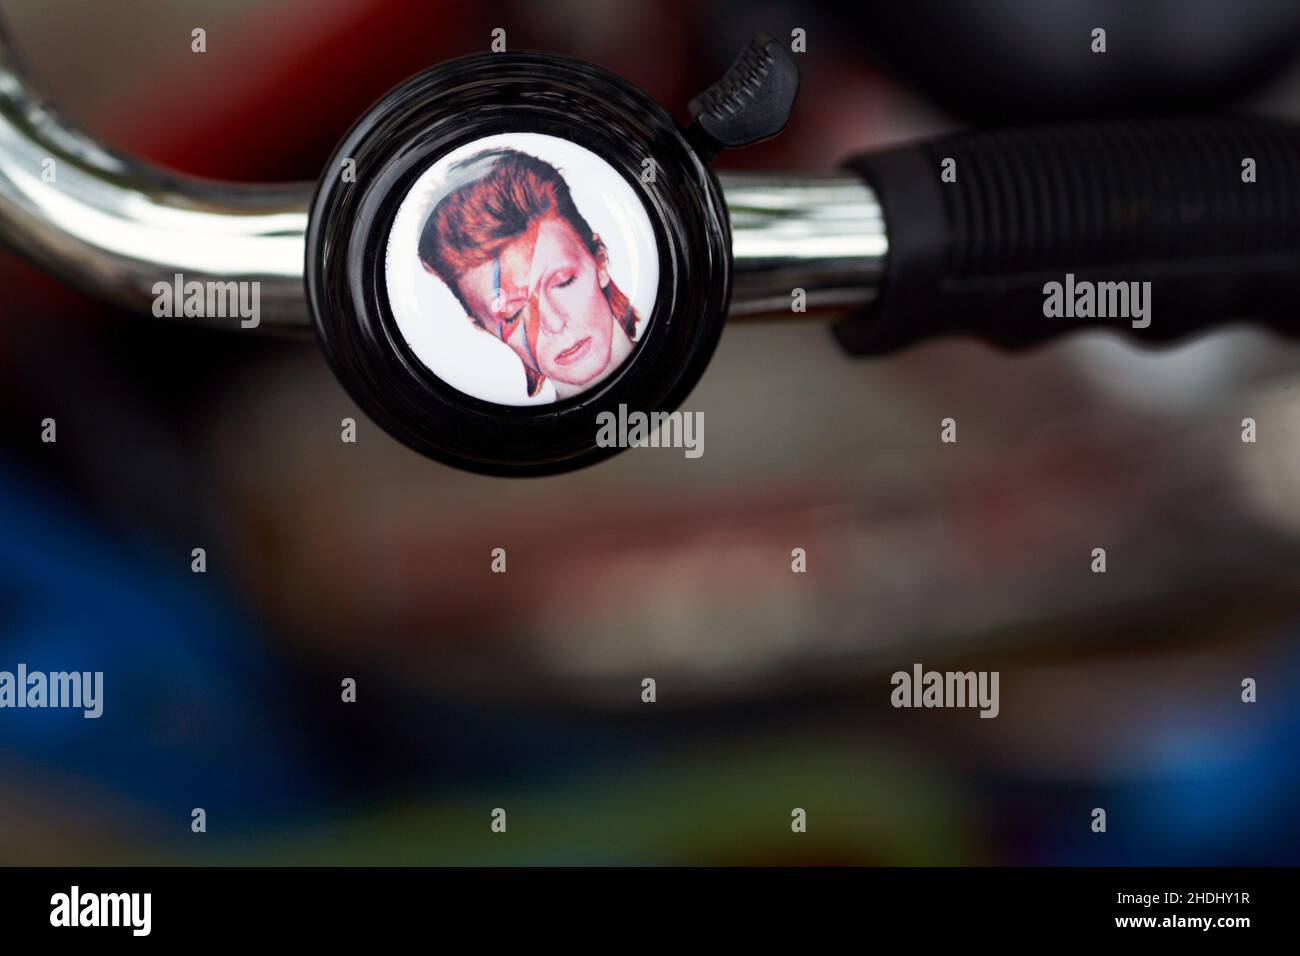 David Bowie – Ziggy Stardust bicycle Bell. Manubrio da bicicletta con campana con sfondo sfocato. Foto Stock